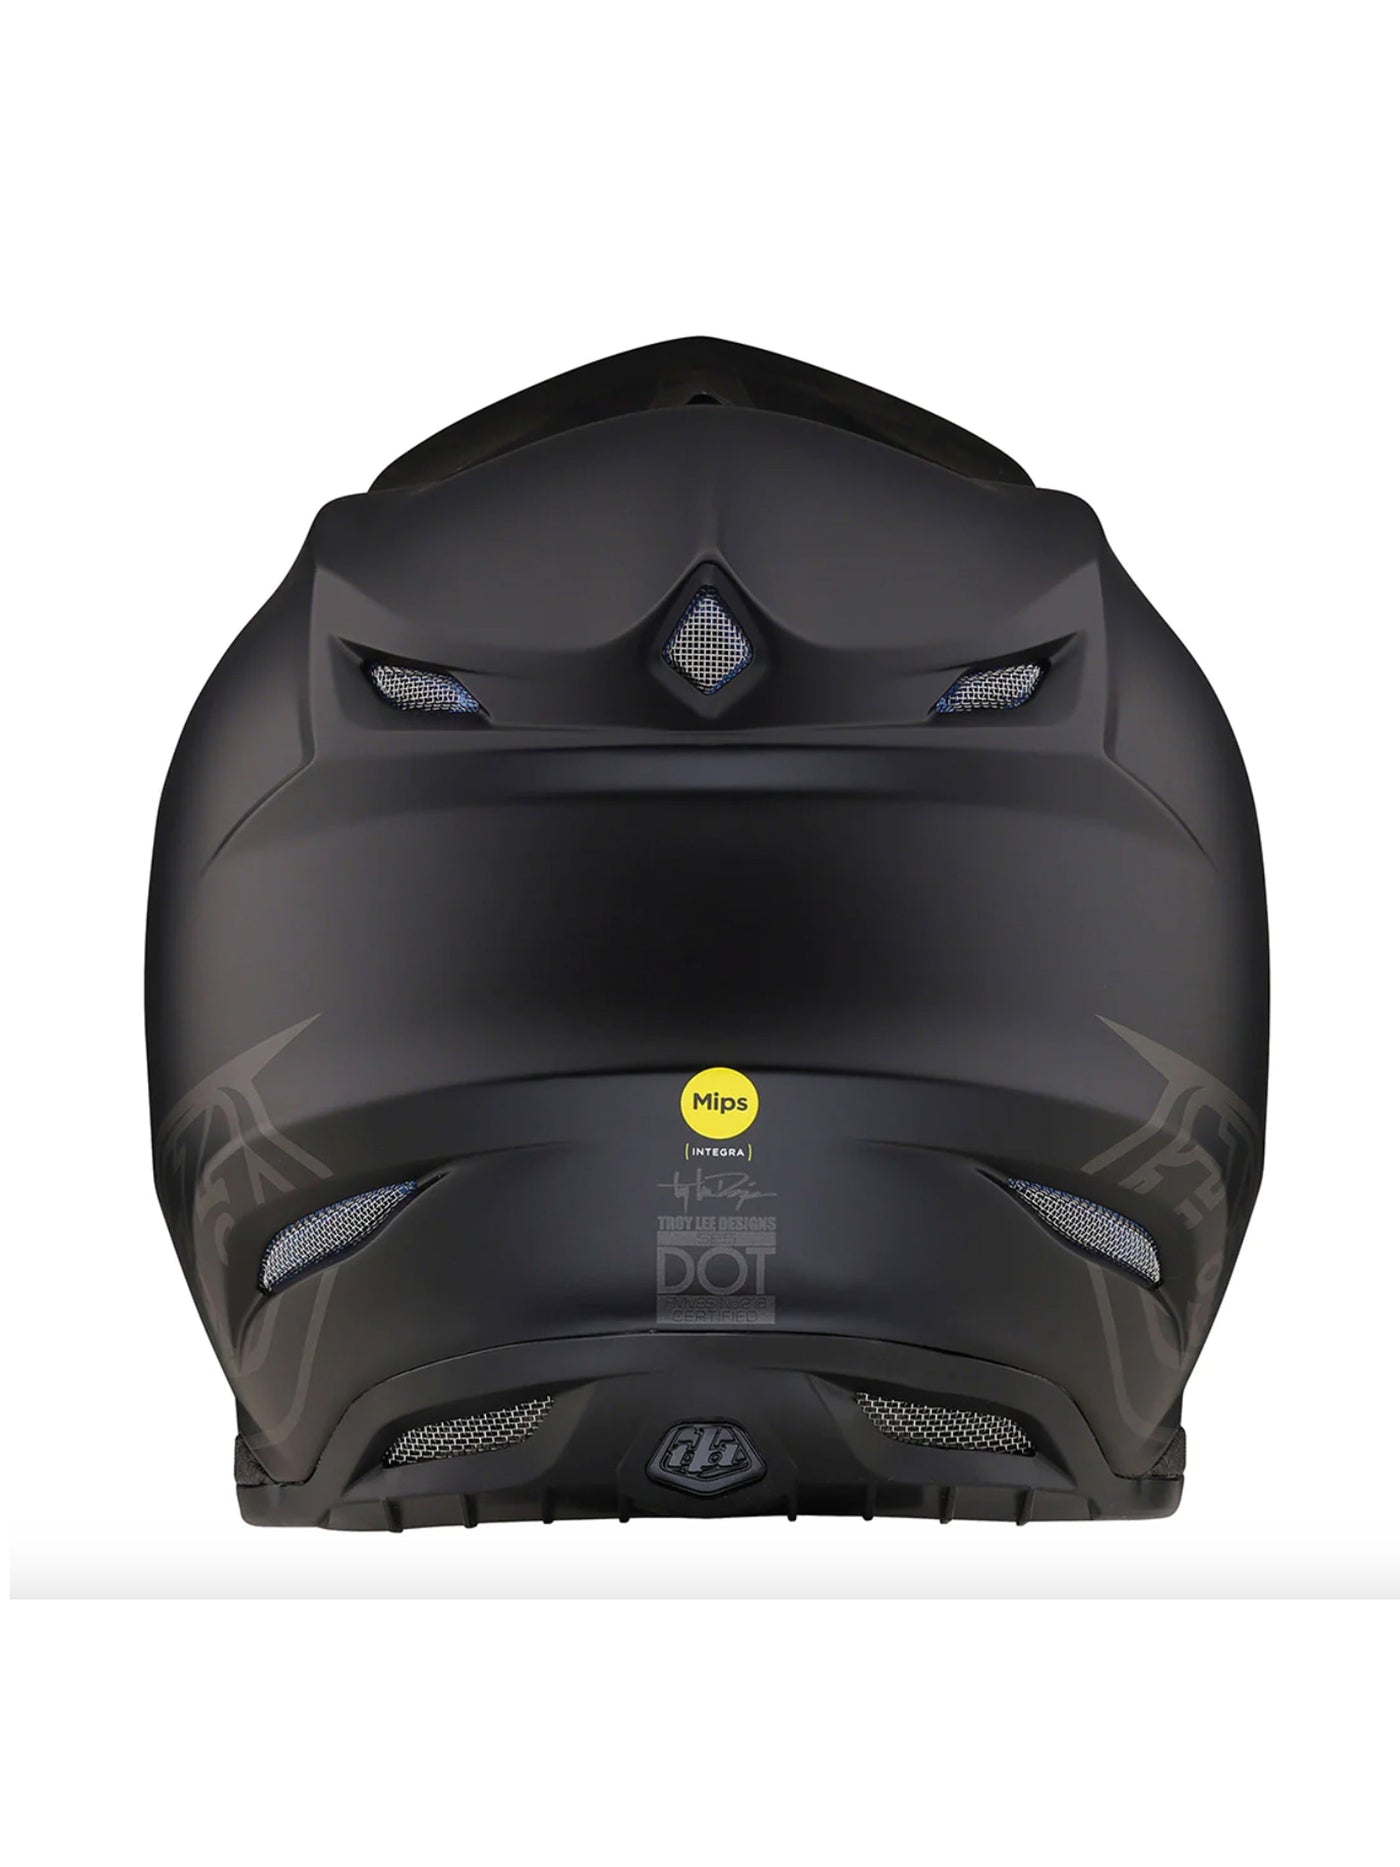 Troy Lee Designs Casco de Moto SE5 Composite Core Negro